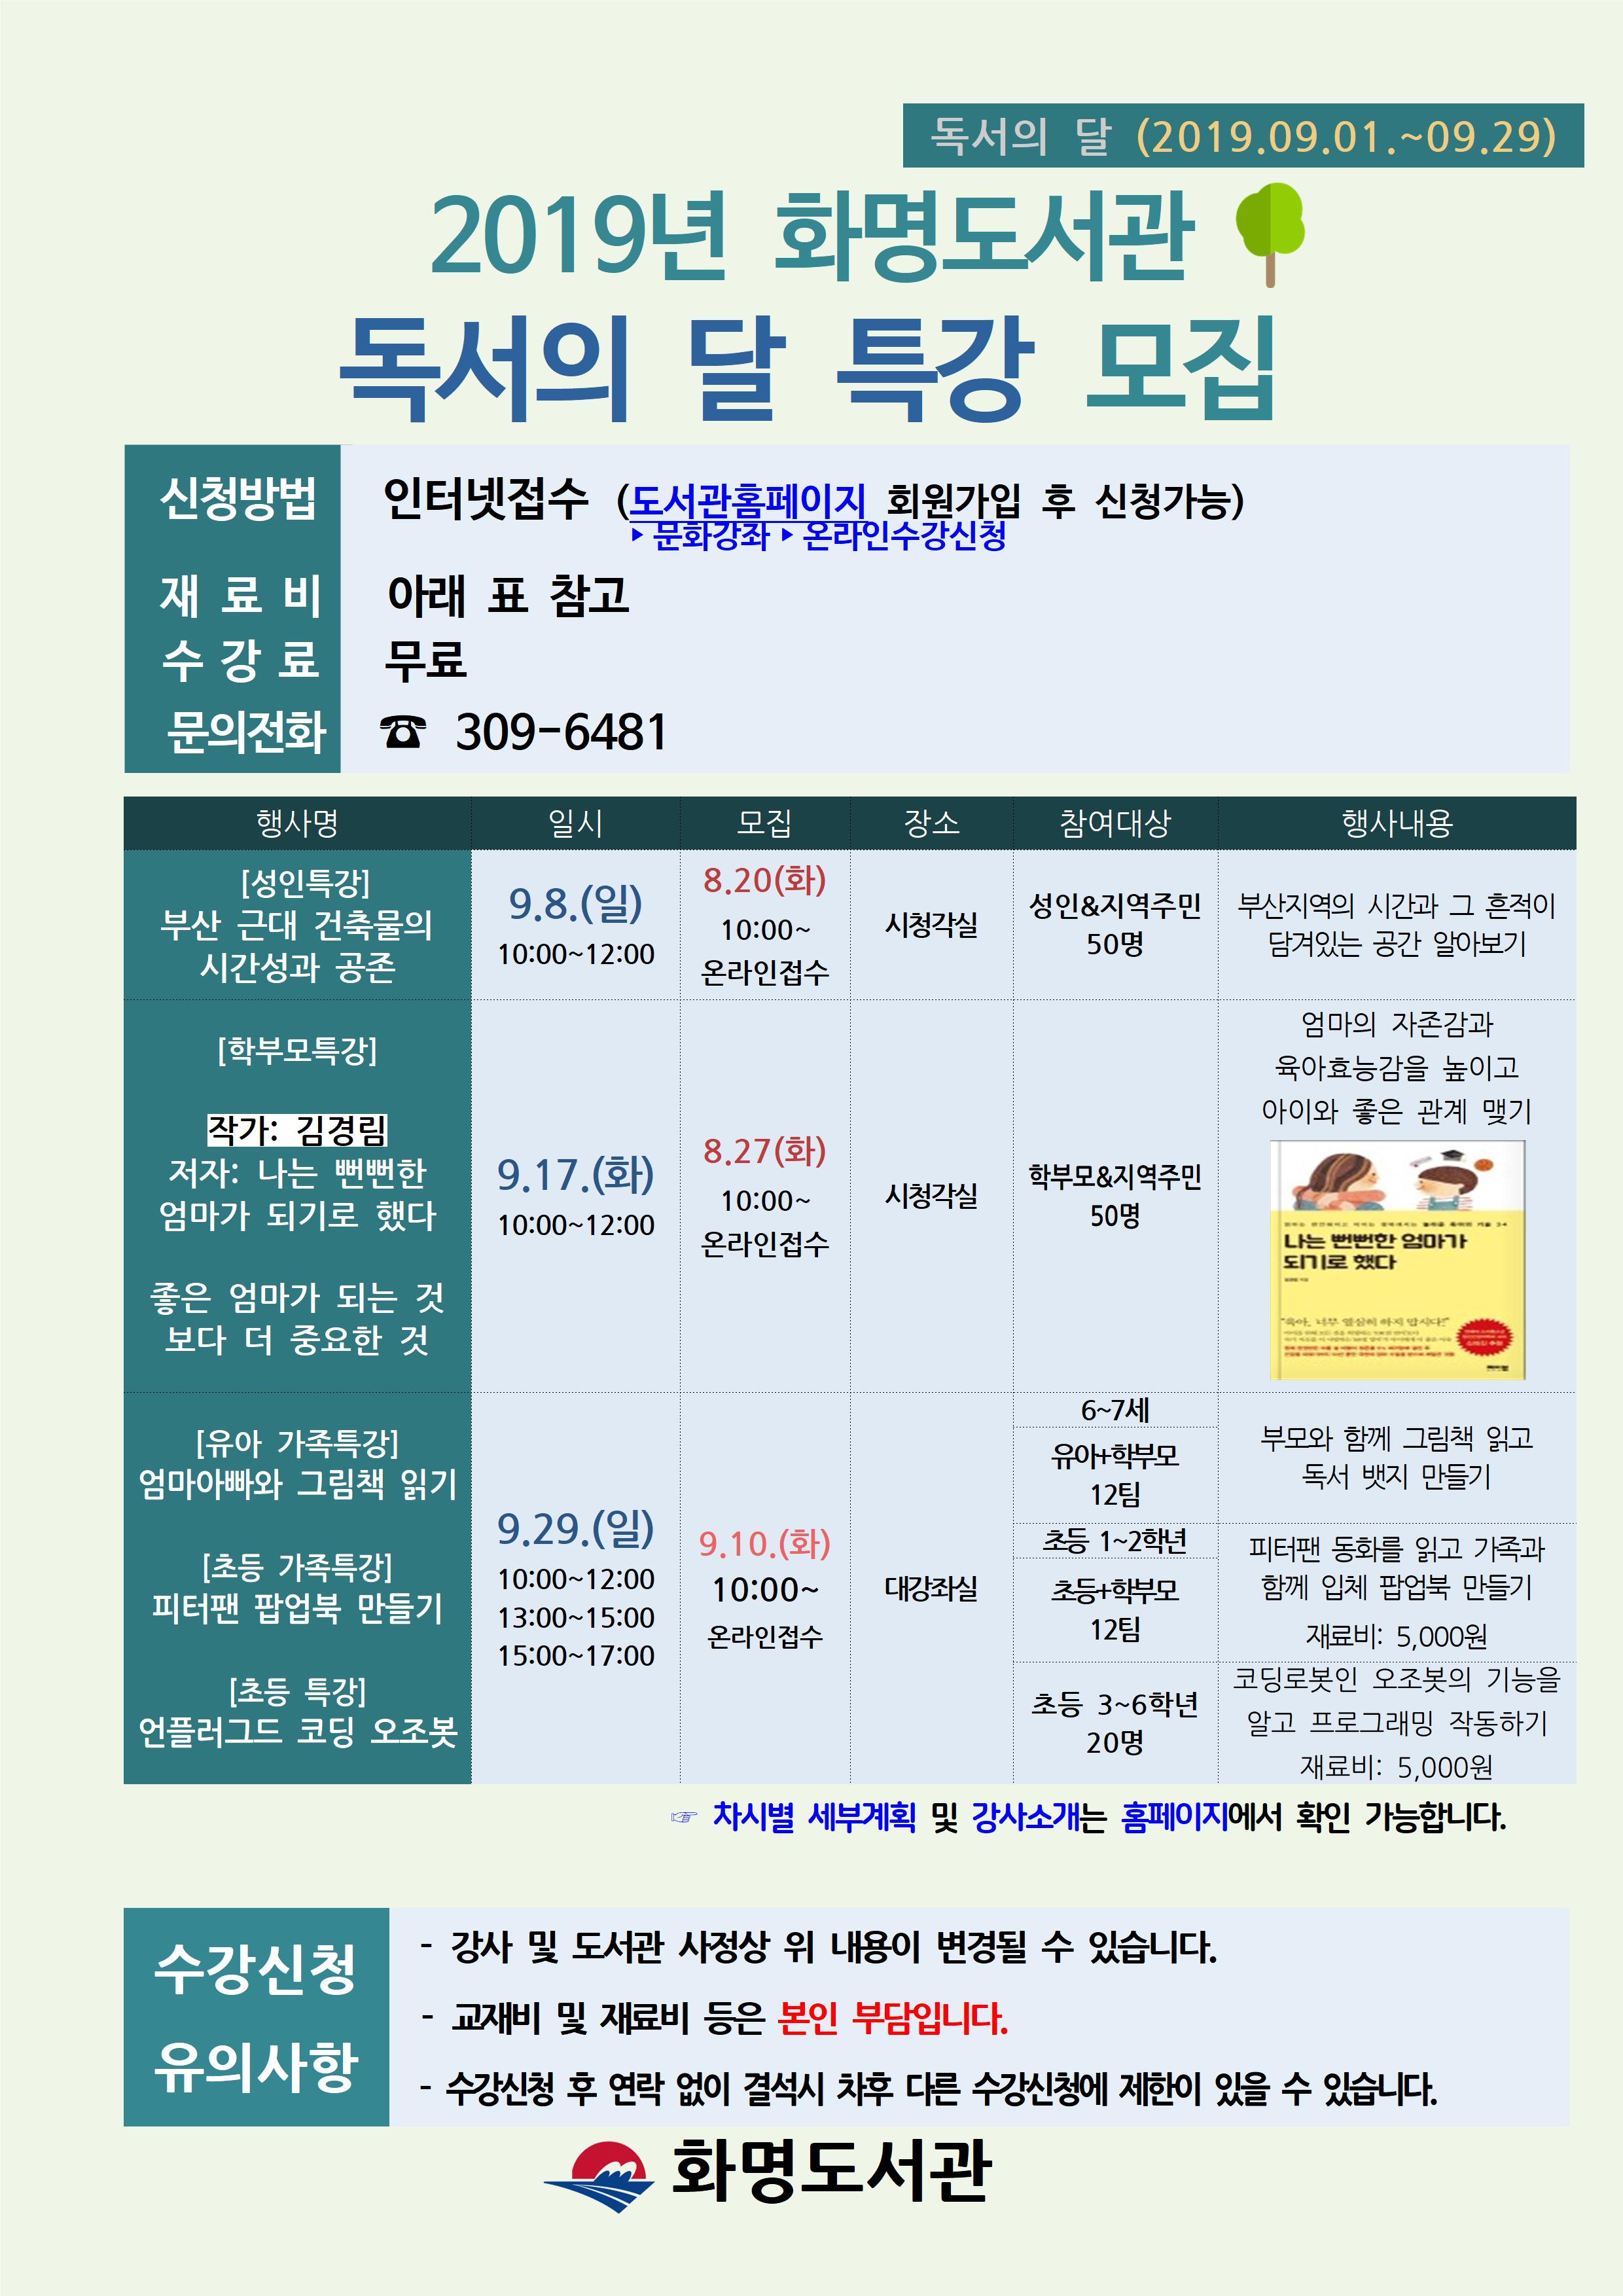 화명도서관 2019년 독서의달 행사 및 특강 안내